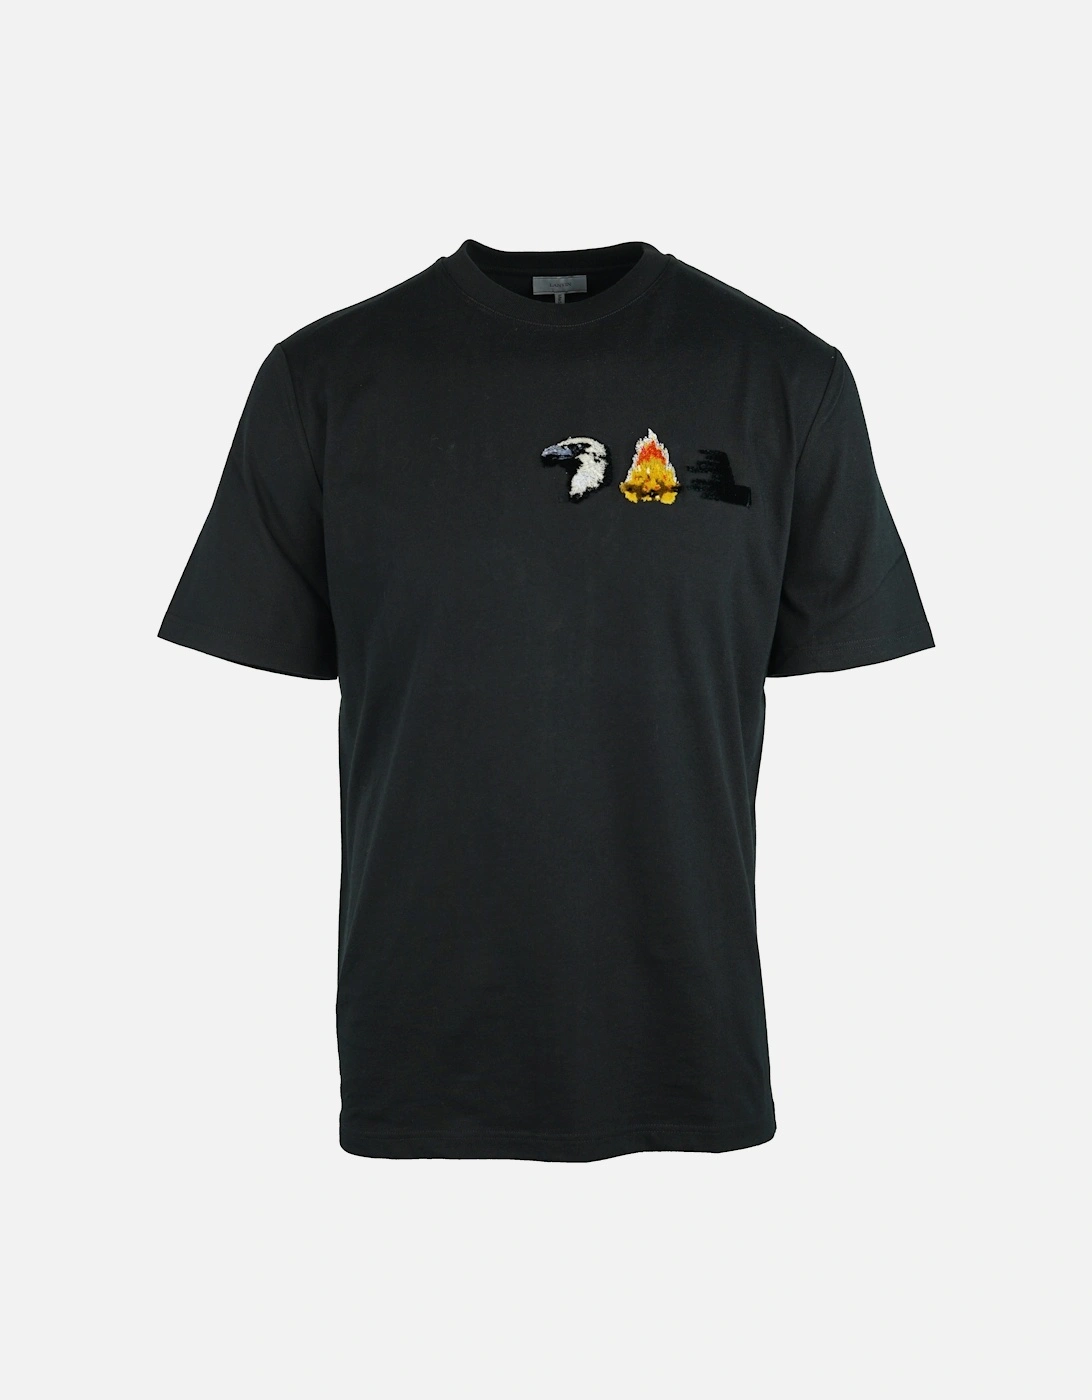 RMJE0033A18 10 Black T-Shirt, 3 of 2